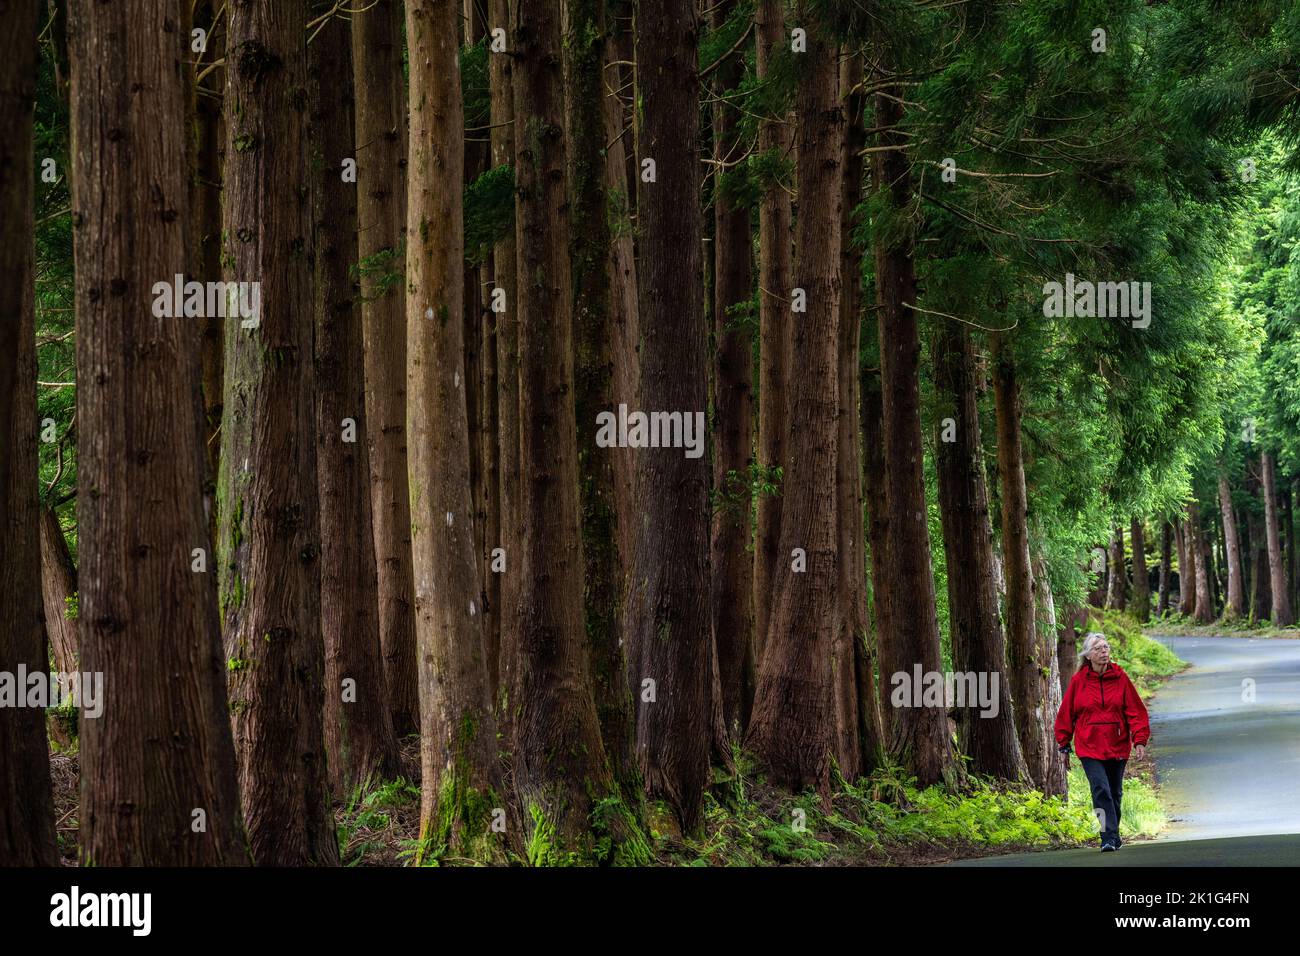 Una donna cammina davanti a giganteschi alberi di cedro giapponesi nel parco naturale Reserva Florestal Parcial da Serra de S. Barbara e dos Misterios Negros sull'isola di Terceira, Azzorre, Portogallo. Oltre il 22% della terra sull'isola di Terceira è messa da parte come riserva naturale. Foto Stock